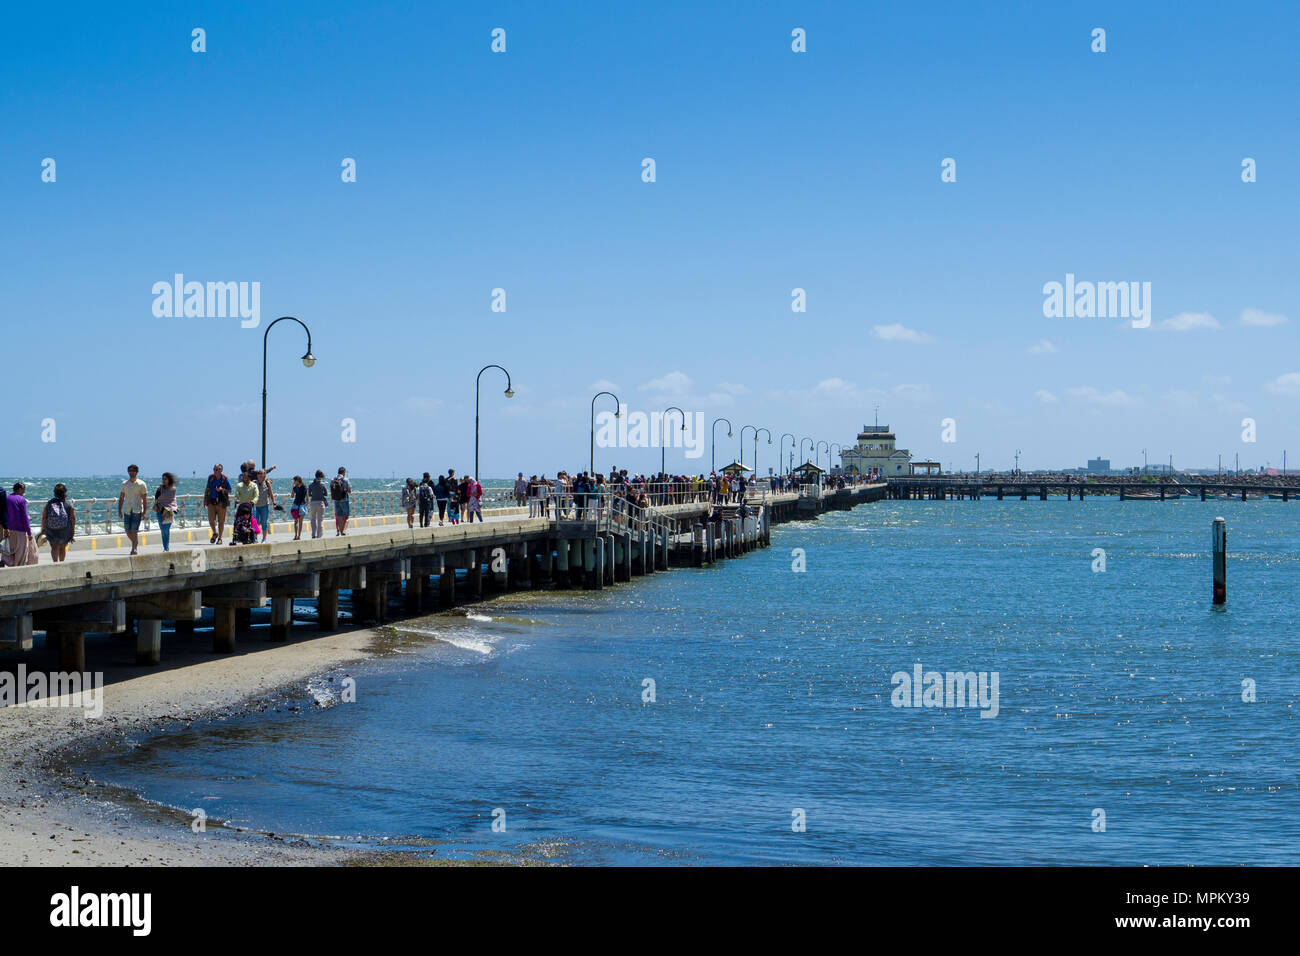 Promeneurs sur St Kilda pier, St Kilda, Melbourne, Victoria, Australie Banque D'Images